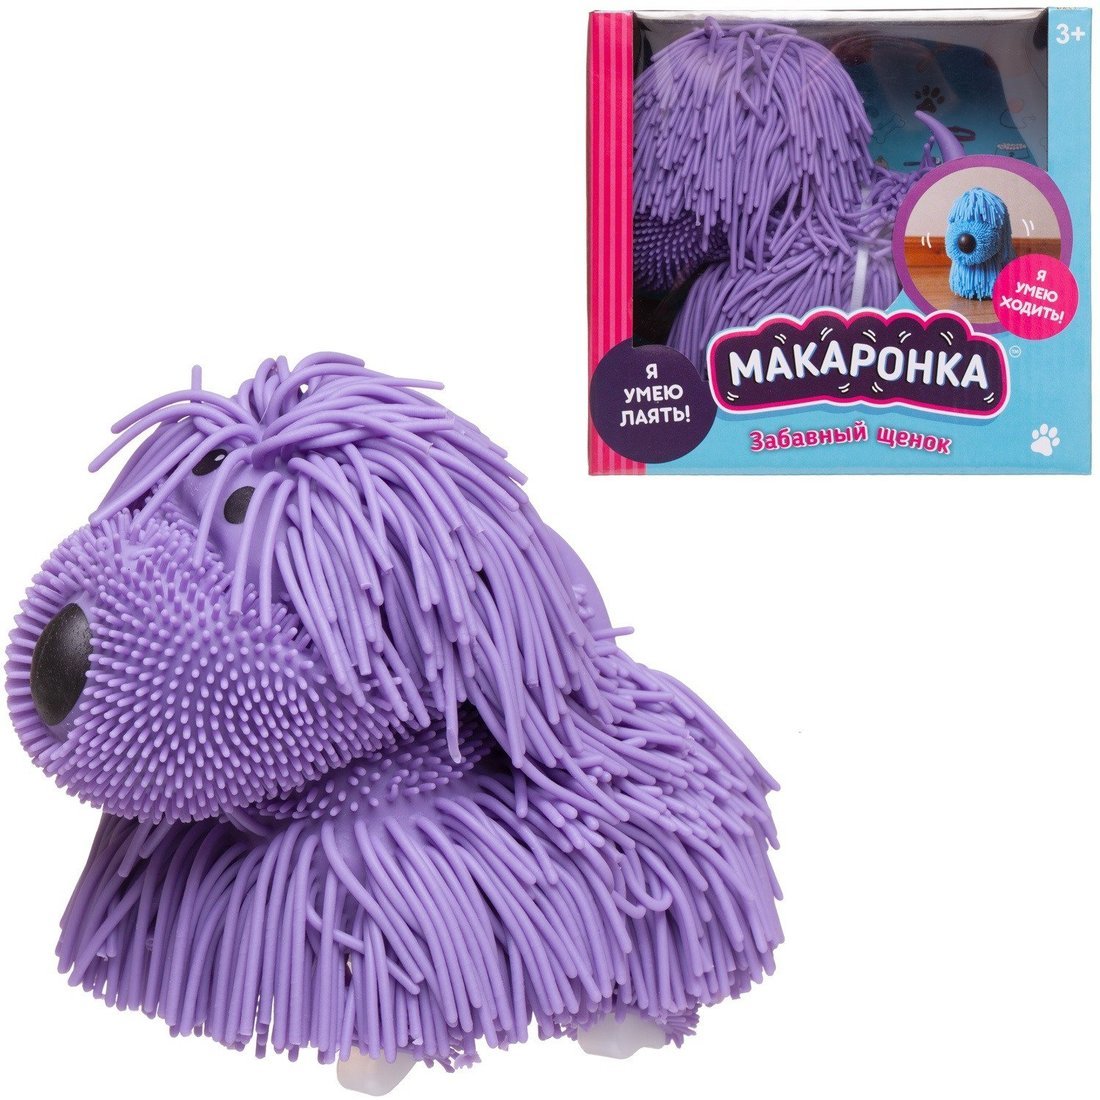 Интерактивная игрушка Макаронка Собака фиолетовая ходит, звуковые и музыкальные эффекты.